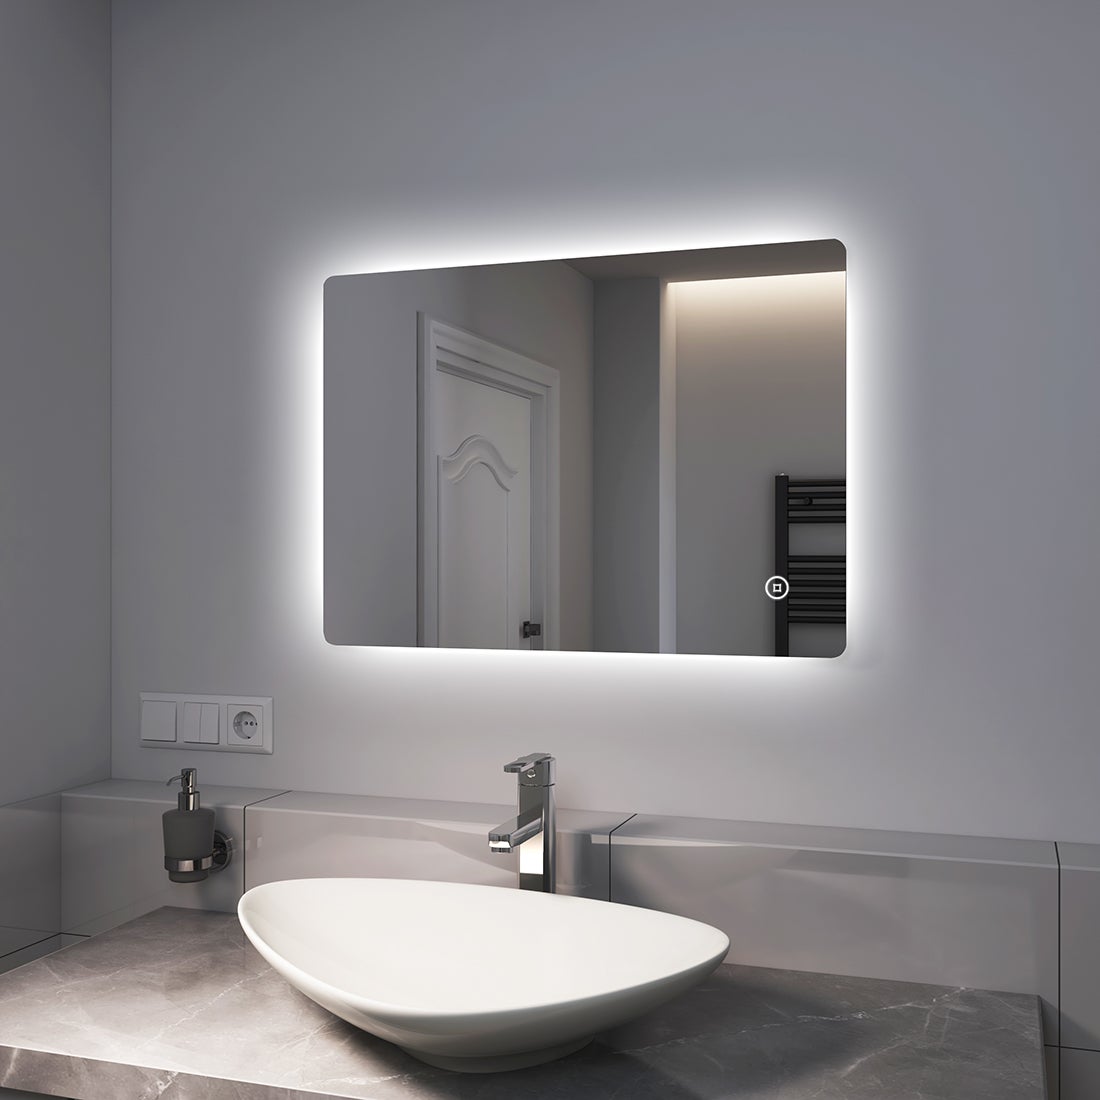 EMKE Badspiegel LED 70x50cm, Kaltweißer Beleuchtung, Touch-schalter, Dimmbar